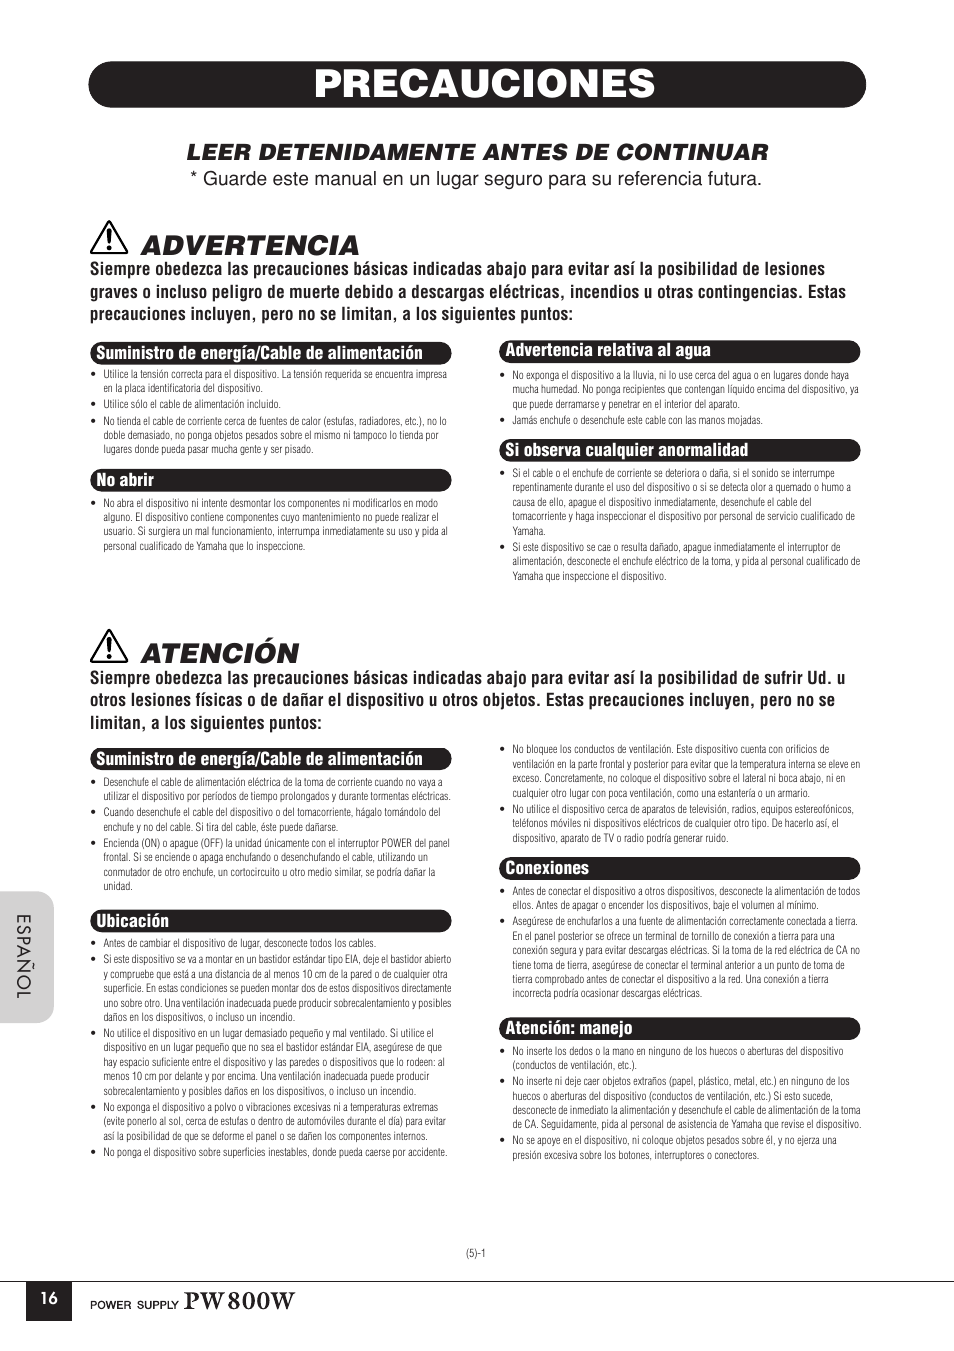 Precauciones, Advertencia, Atención | Leer detenidamente antes de continuar | Yamaha PW800W User Manual | Page 4 / 10